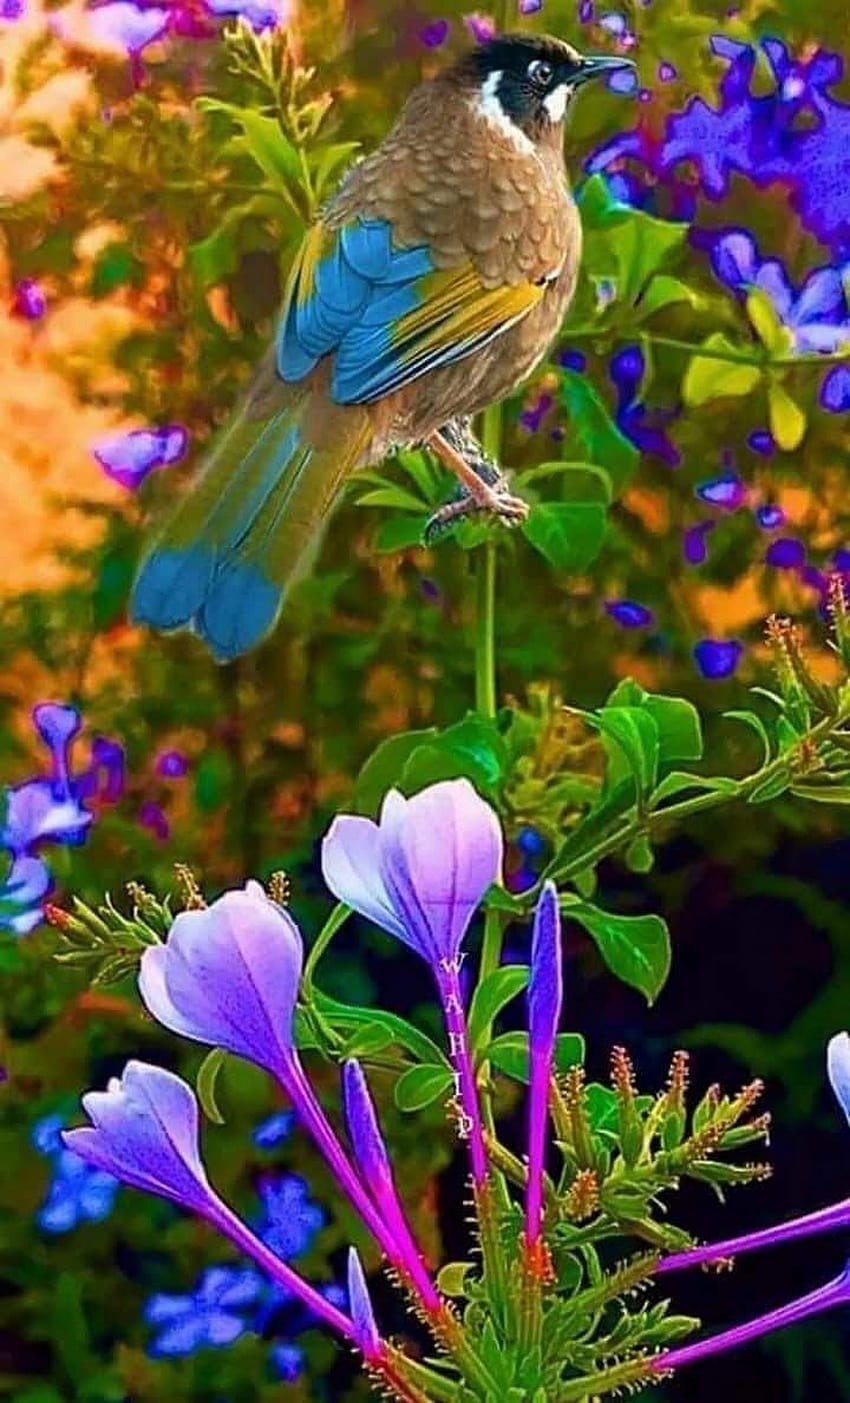 Burung dan Bunga Indah, burung beo dan bunga wallpaper ponsel HD